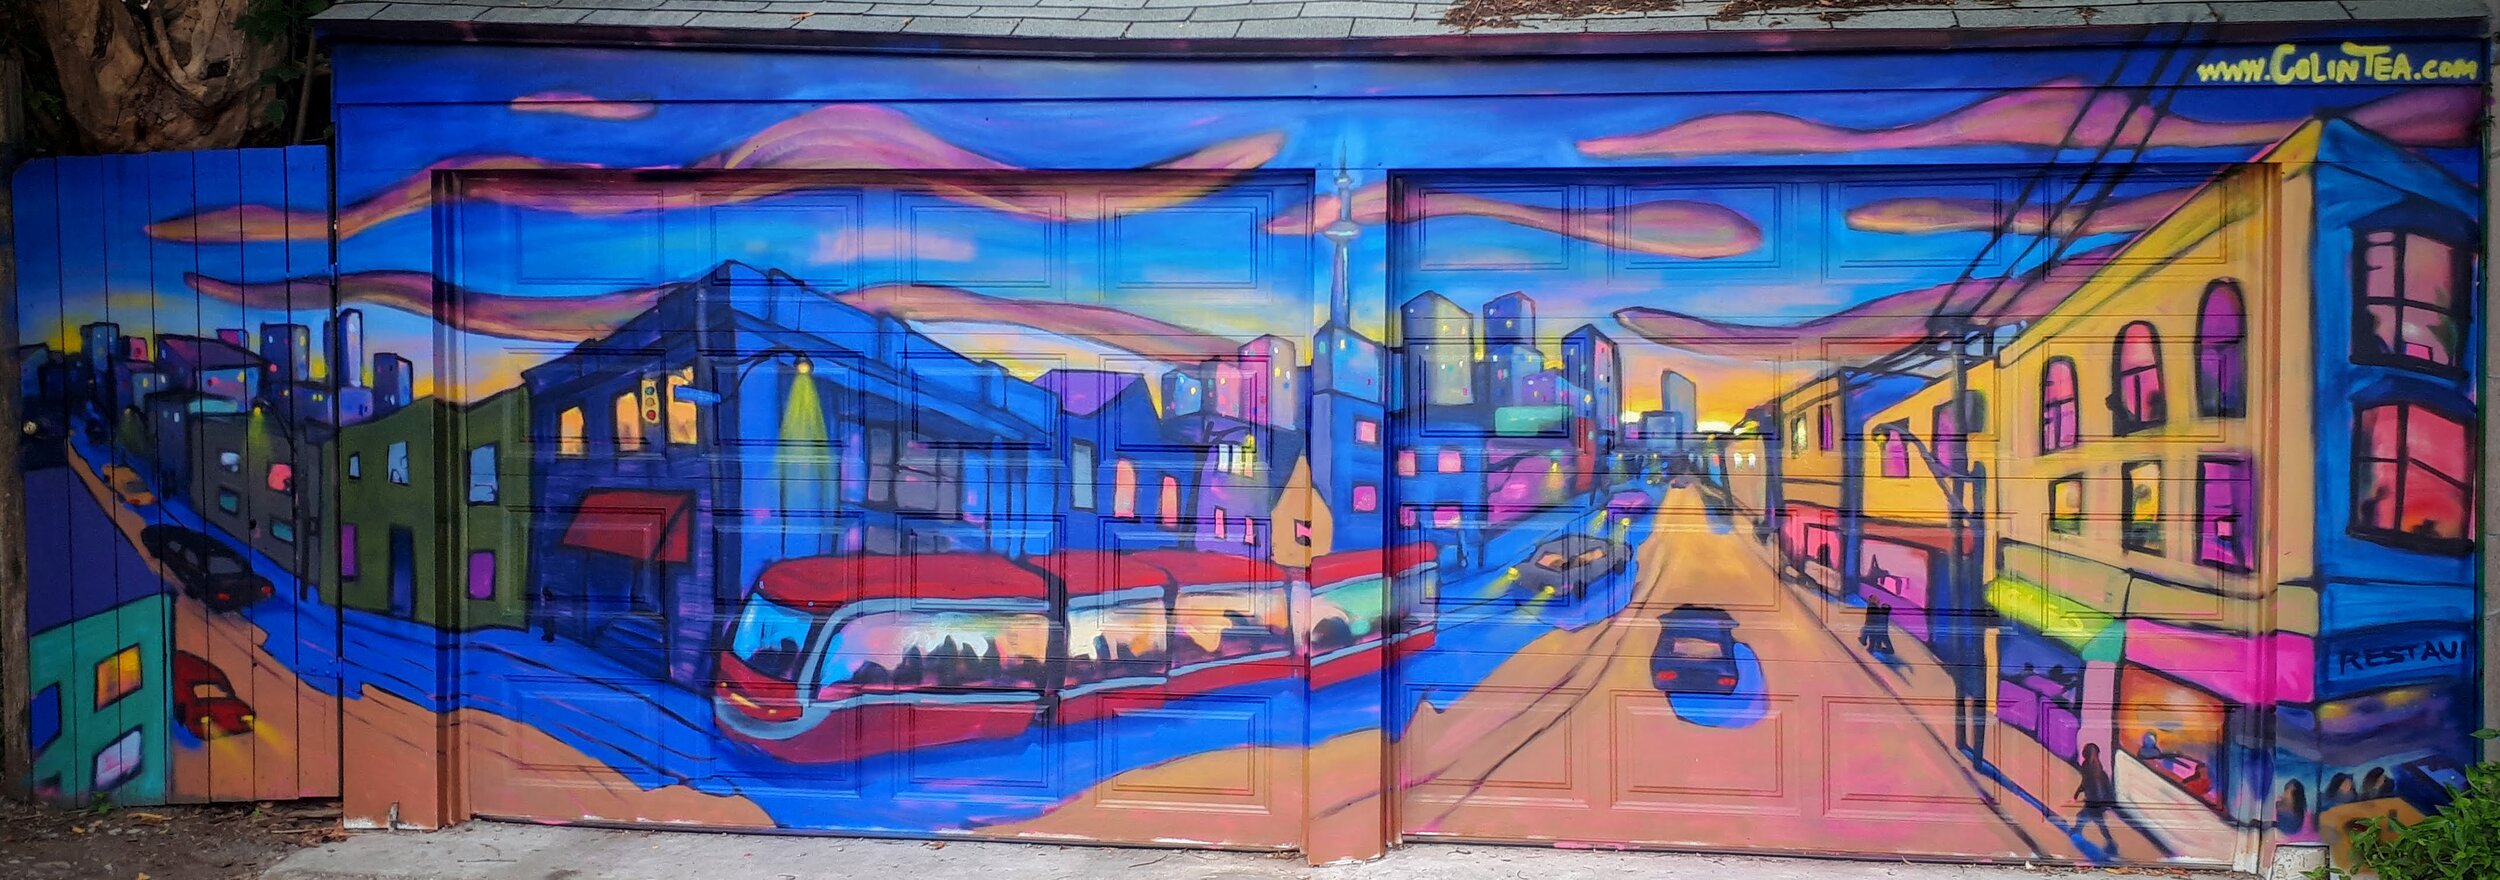 Carlton Streetcar mural by Colin Tea